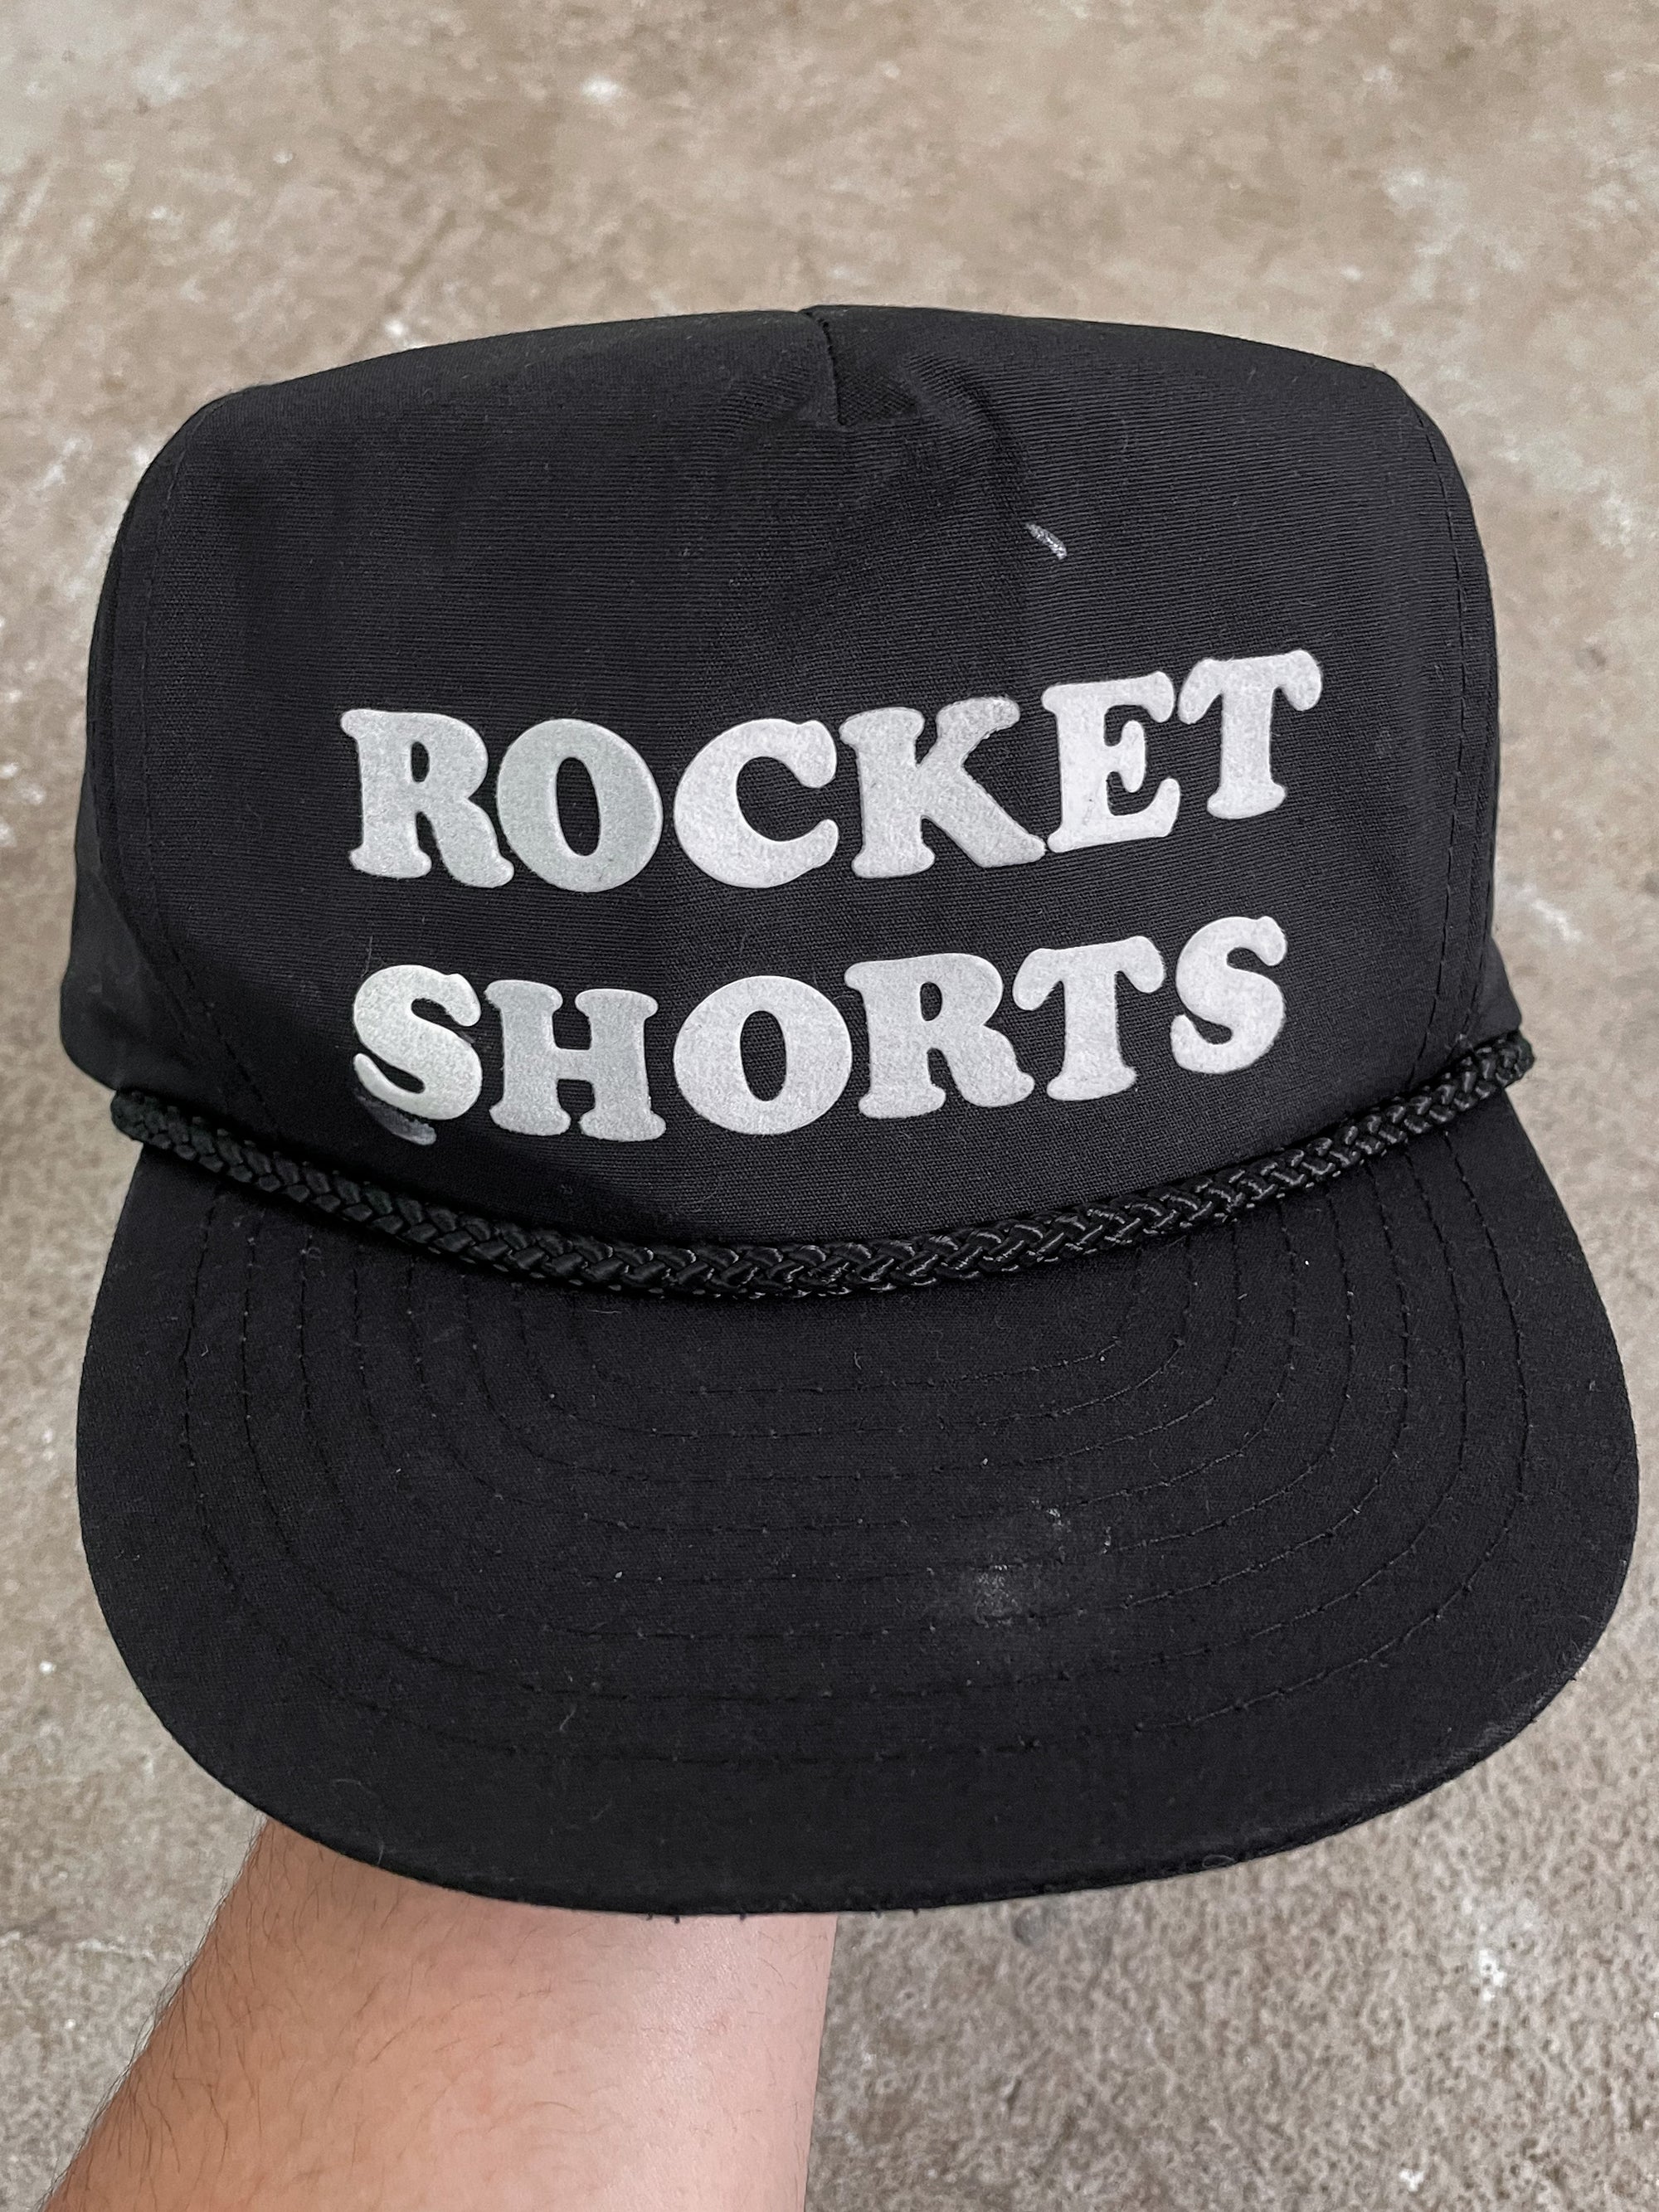 1980s/90s “Rocket Shorts” Trucker Hat